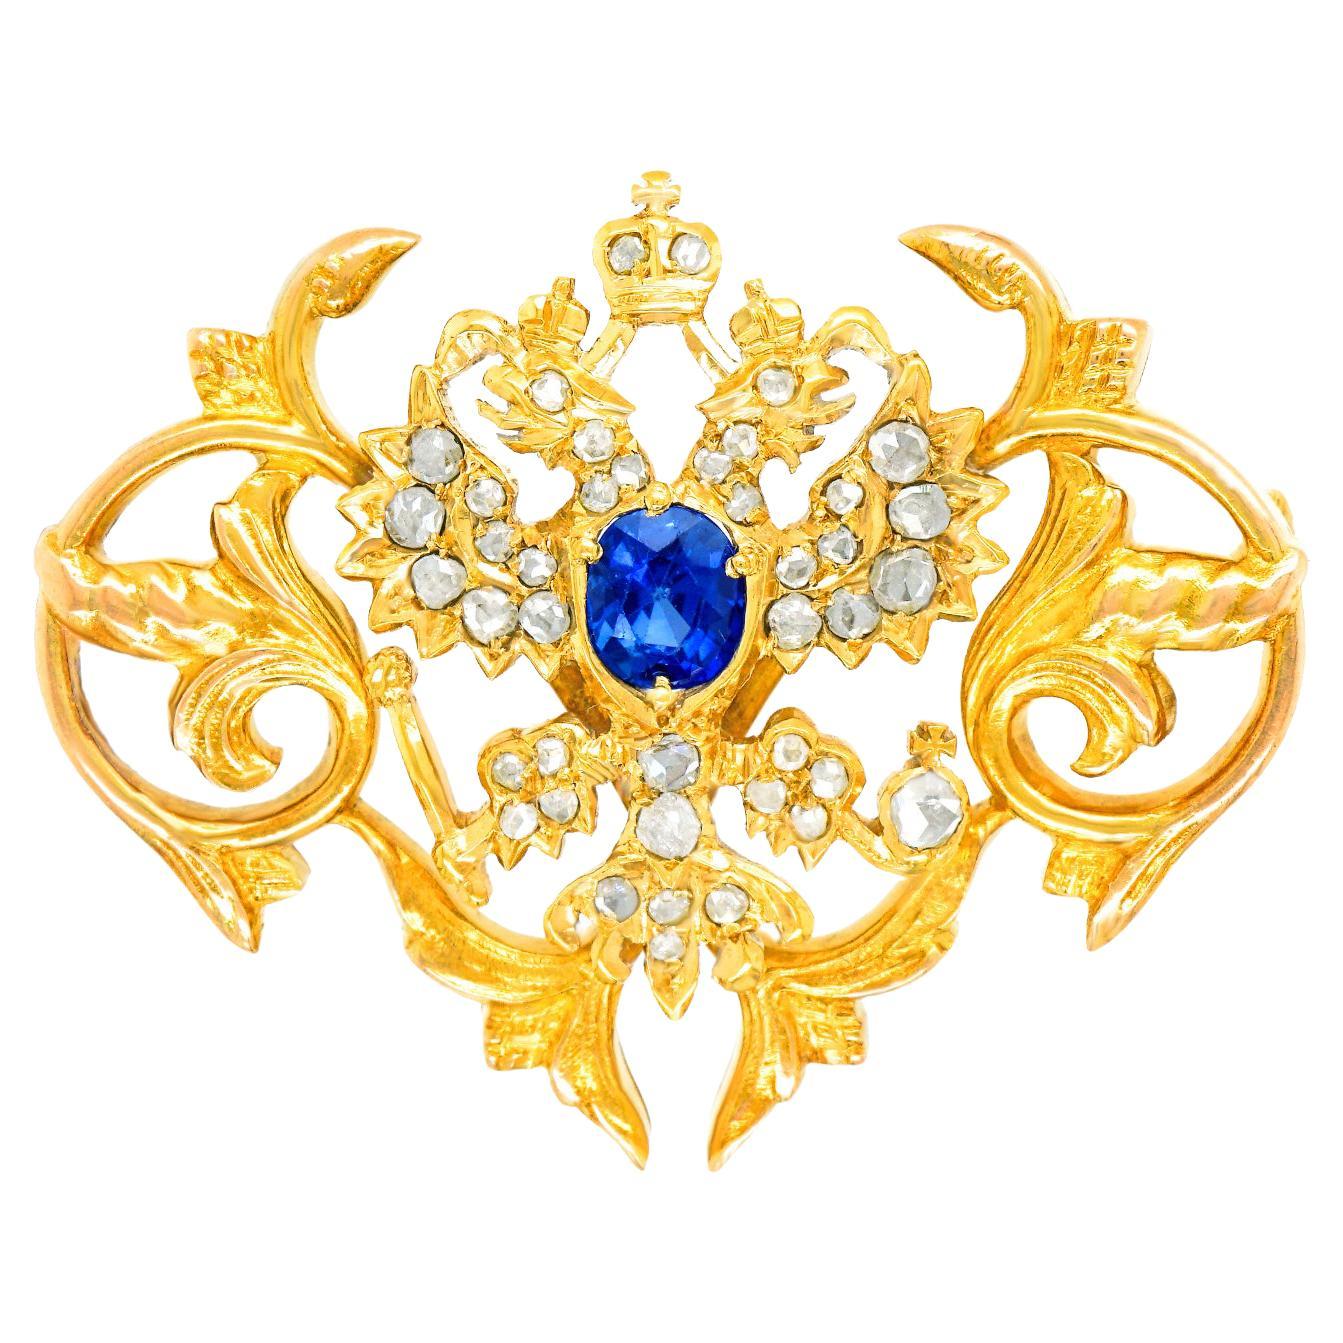 Imperial Romanov Crest Brooch